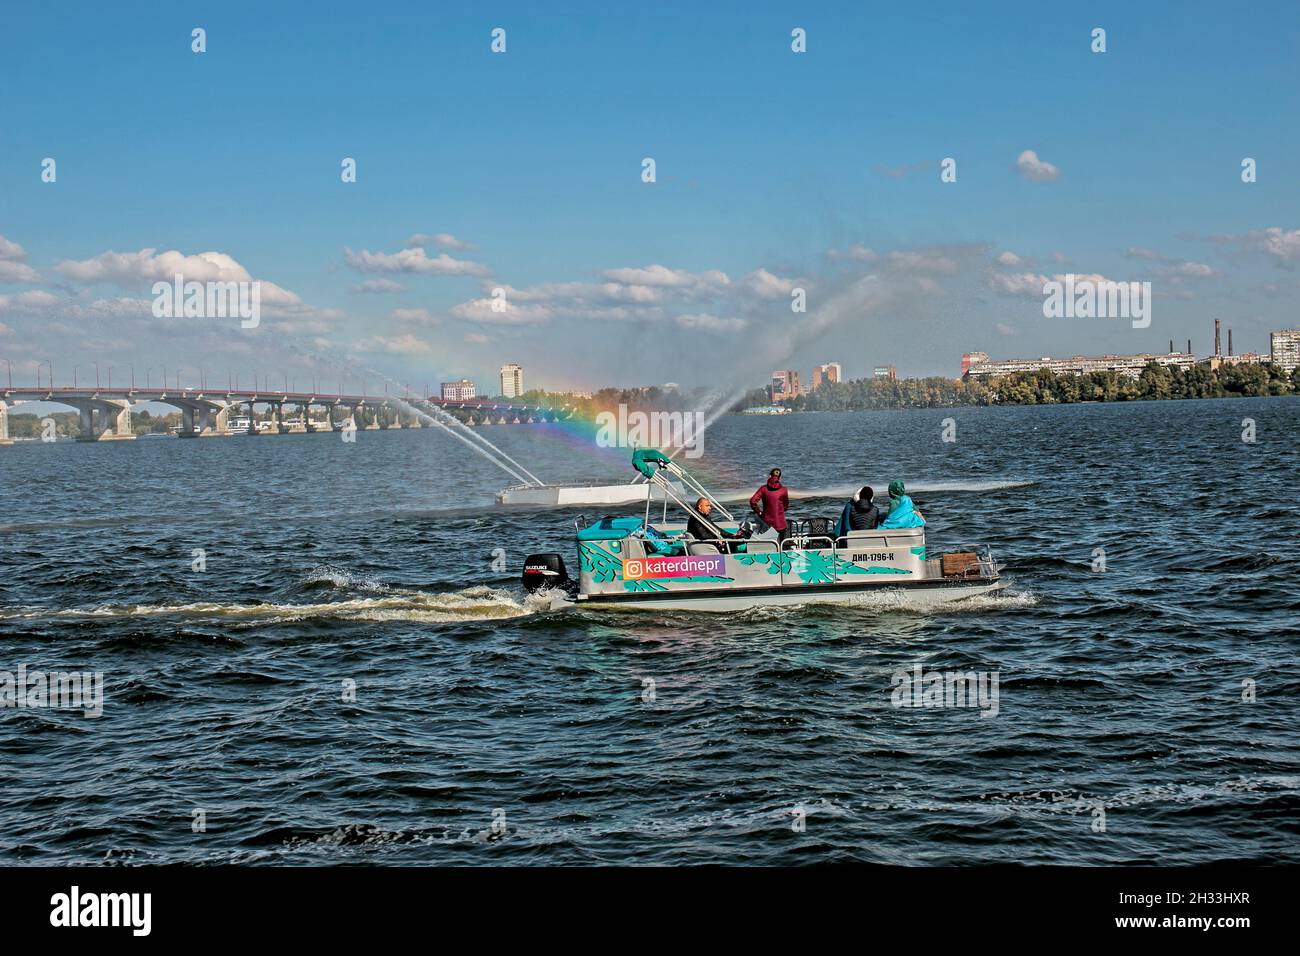 Dnepropetrovsk, Ucrania - 10.05.2021: Los habitantes de la ciudad en un barco de placer admirar la fuente con un hermoso arco iris. Fondo azul cielo. Arco iris de Foto de stock